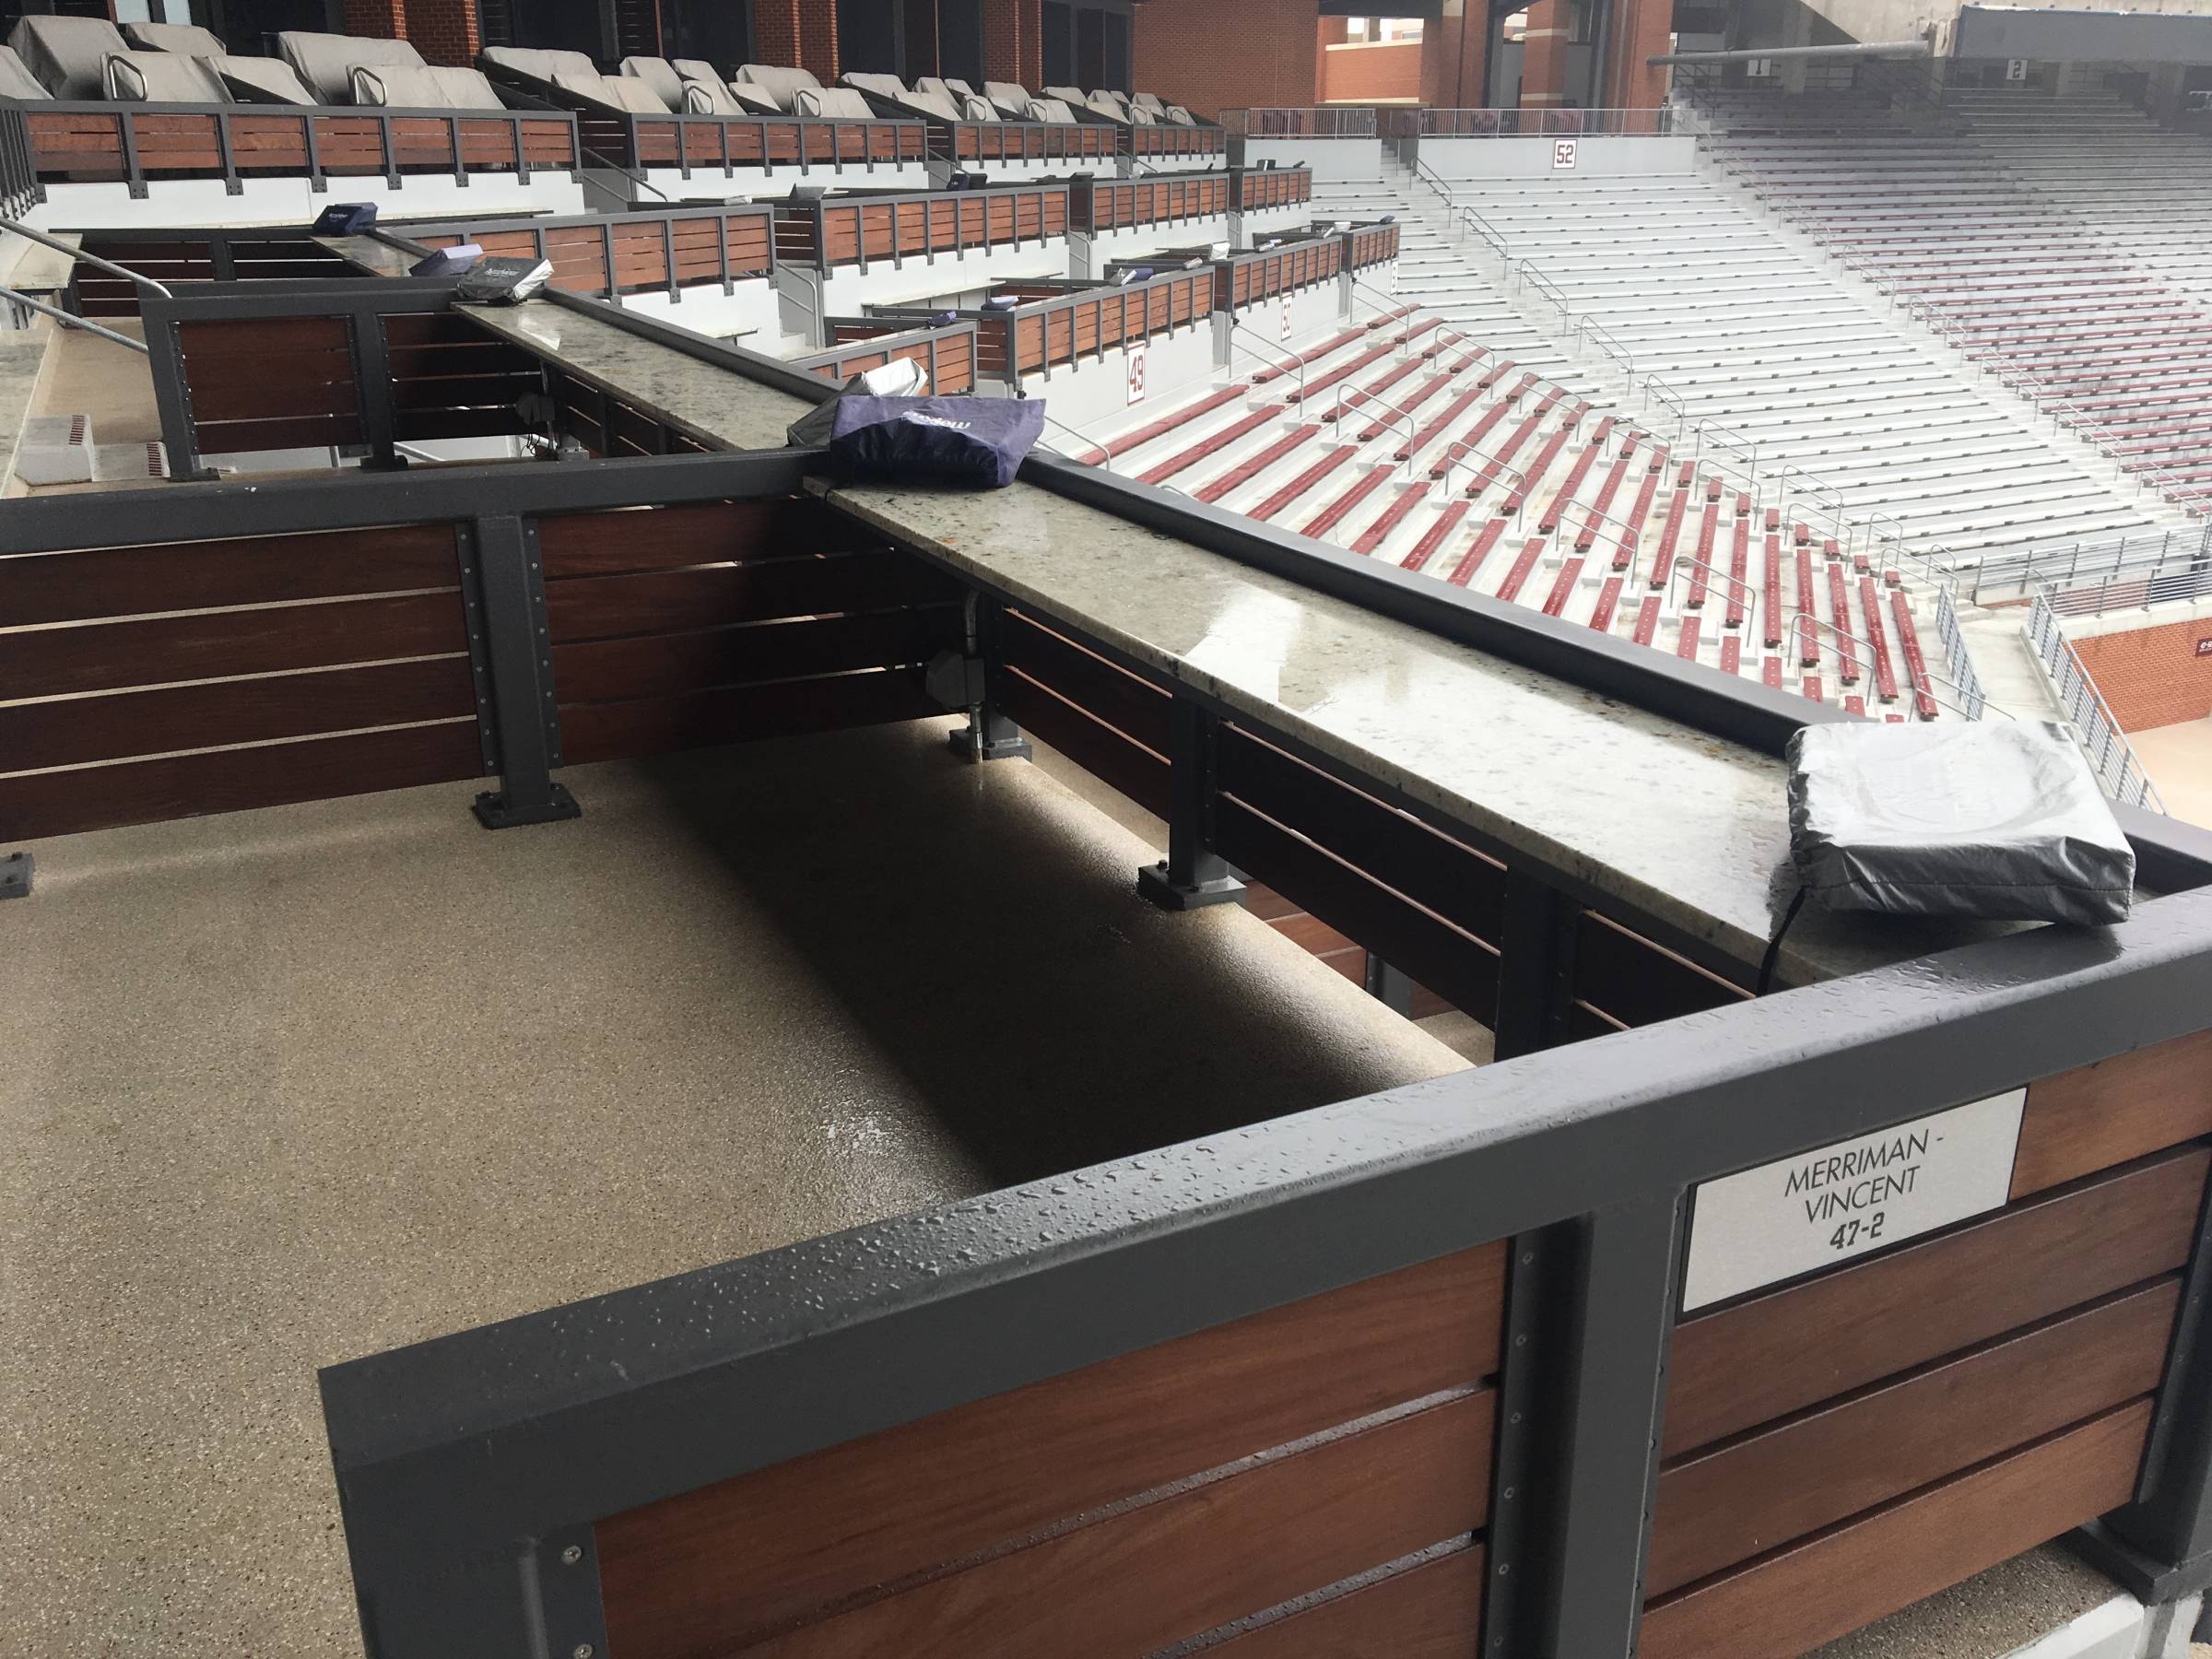 Loge Boxes at Oklahoma Memorial Stadium